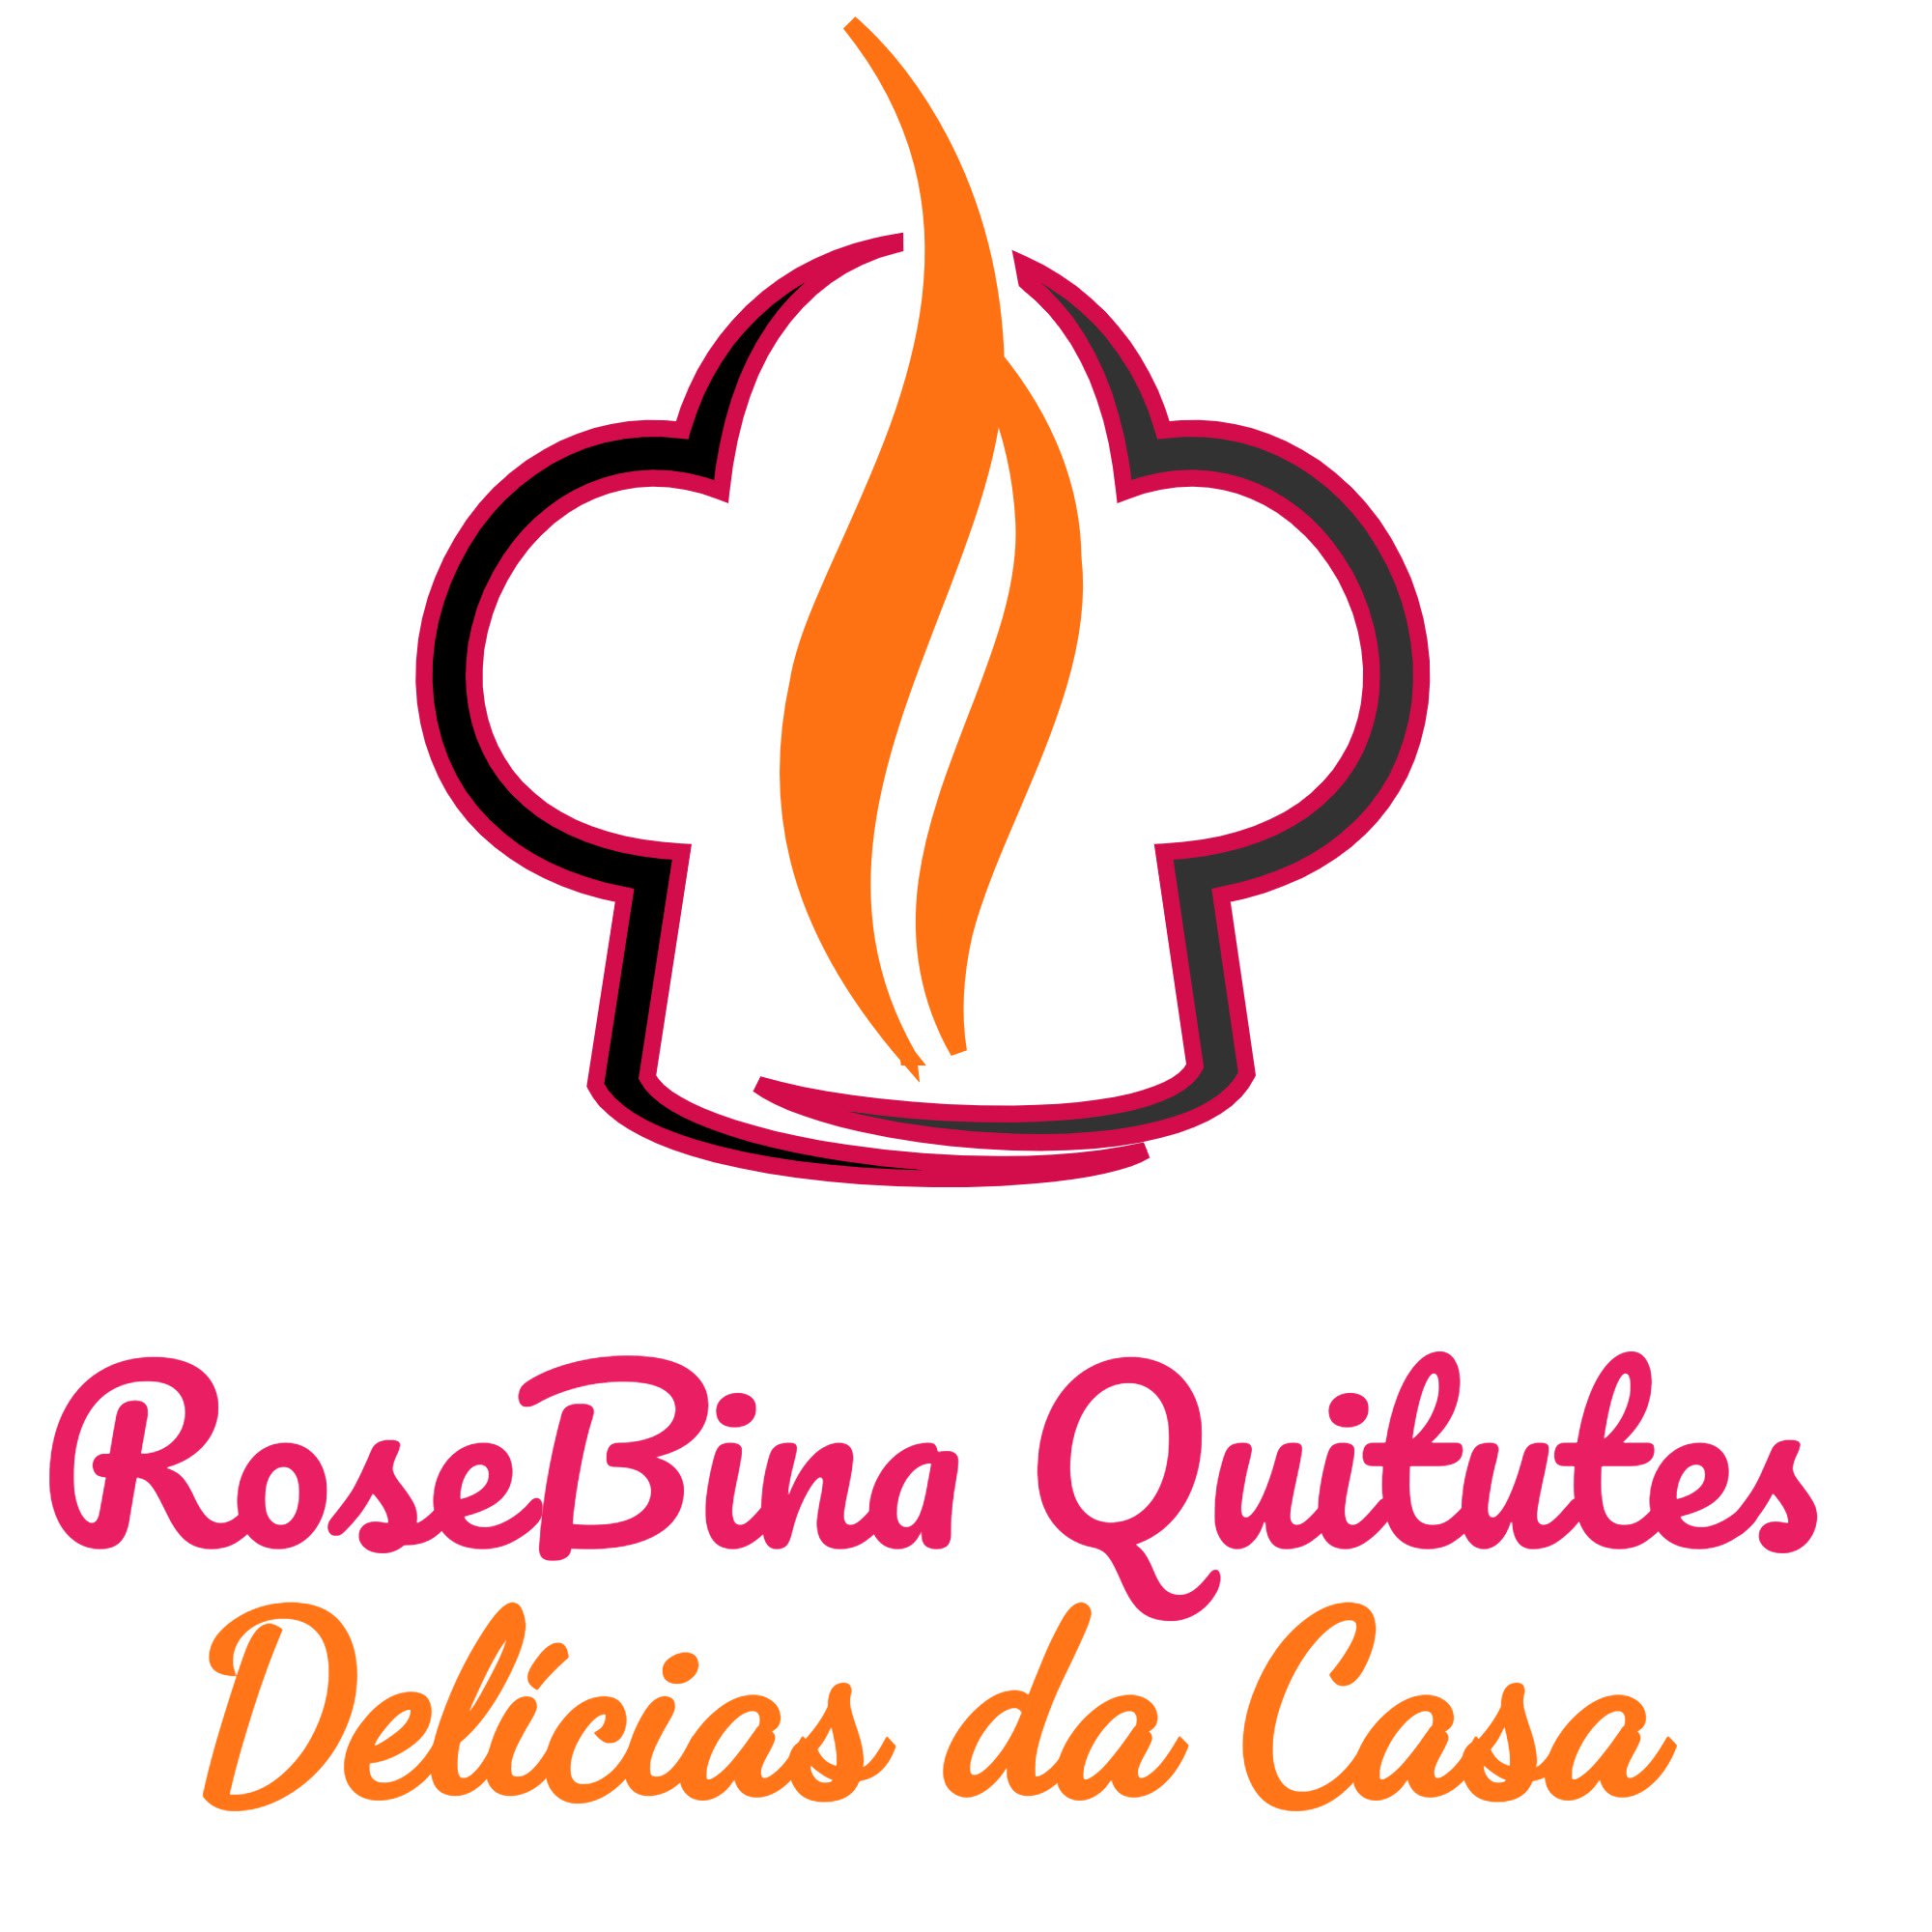 RoseBina Quitudes